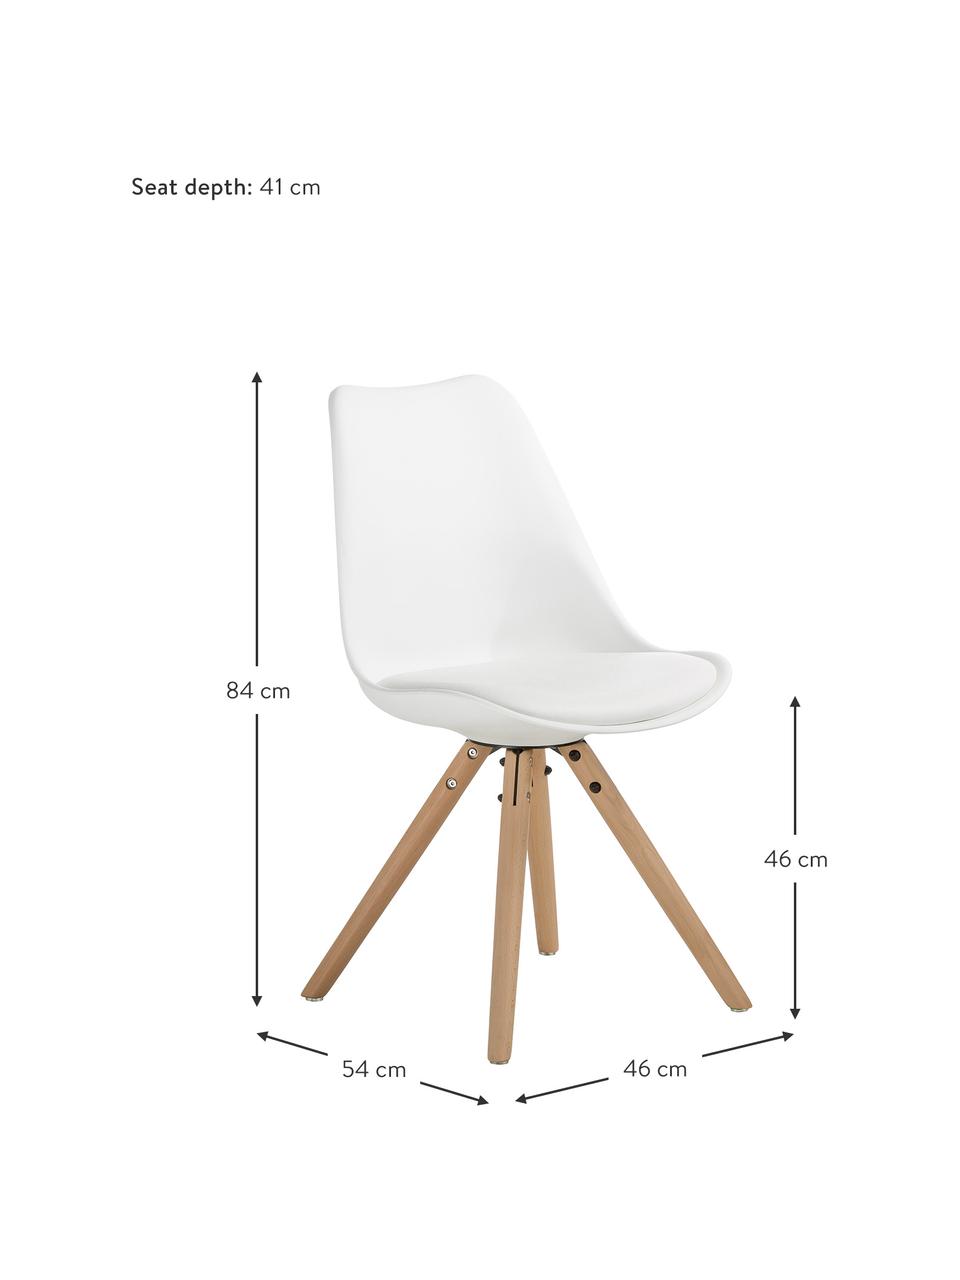 Kunststoffstühle Max in Weiß, 2 Stück, Sitzfläche: Kunstleder, PVC-Kunststof, Beine: Buchenholz, Weiß, B 46 x T 54 cm